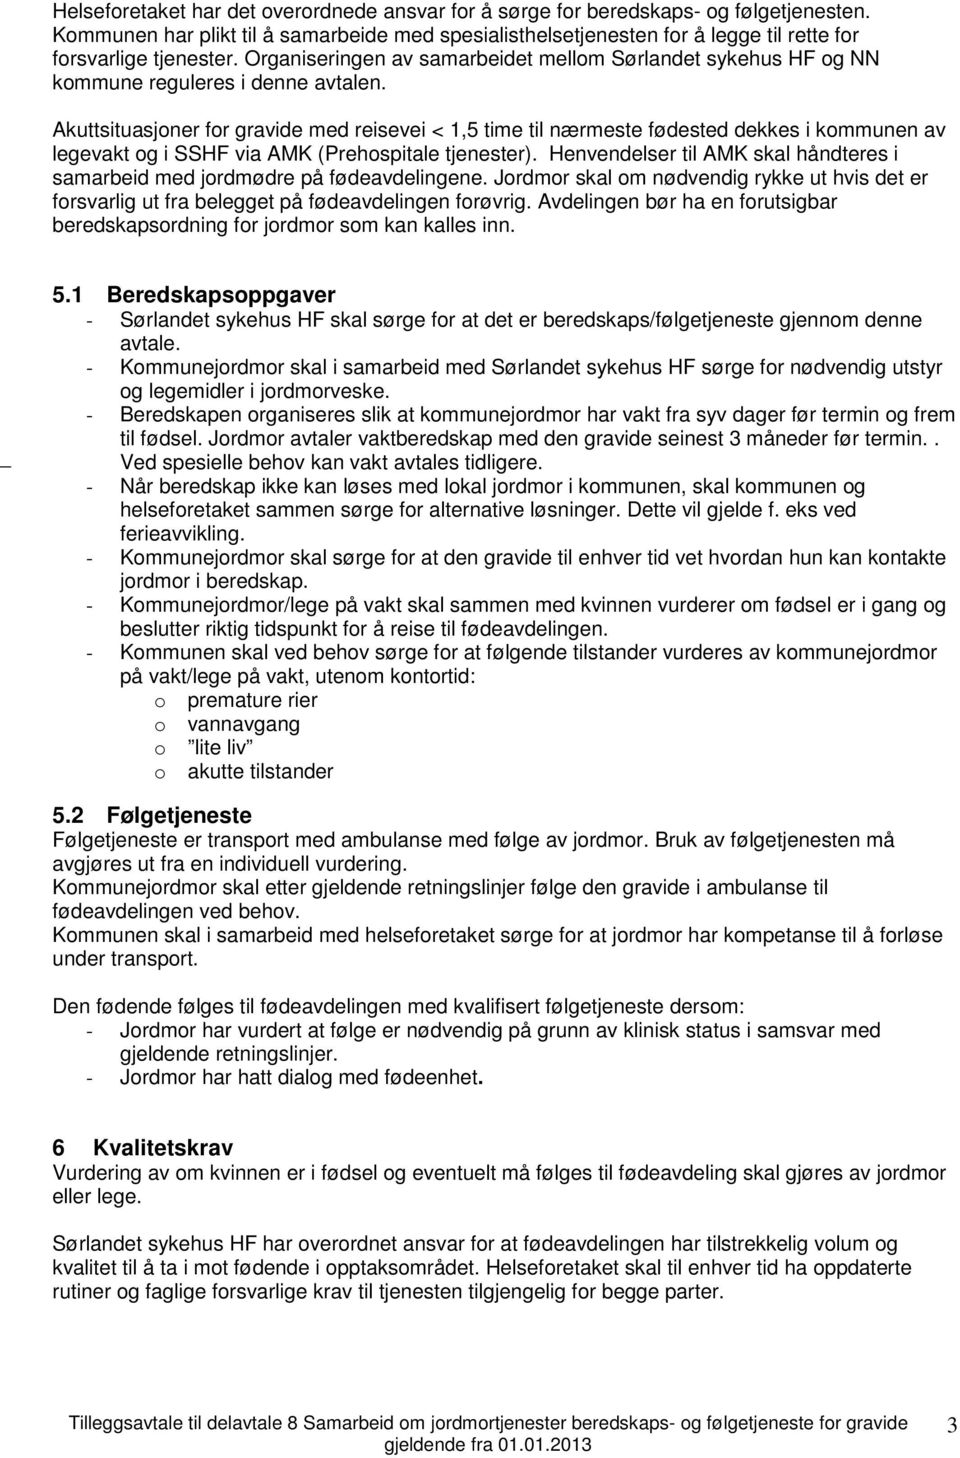 Organiseringen av samarbeidet mellom Sørlandet sykehus HF og NN kommune reguleres i denne avtalen.